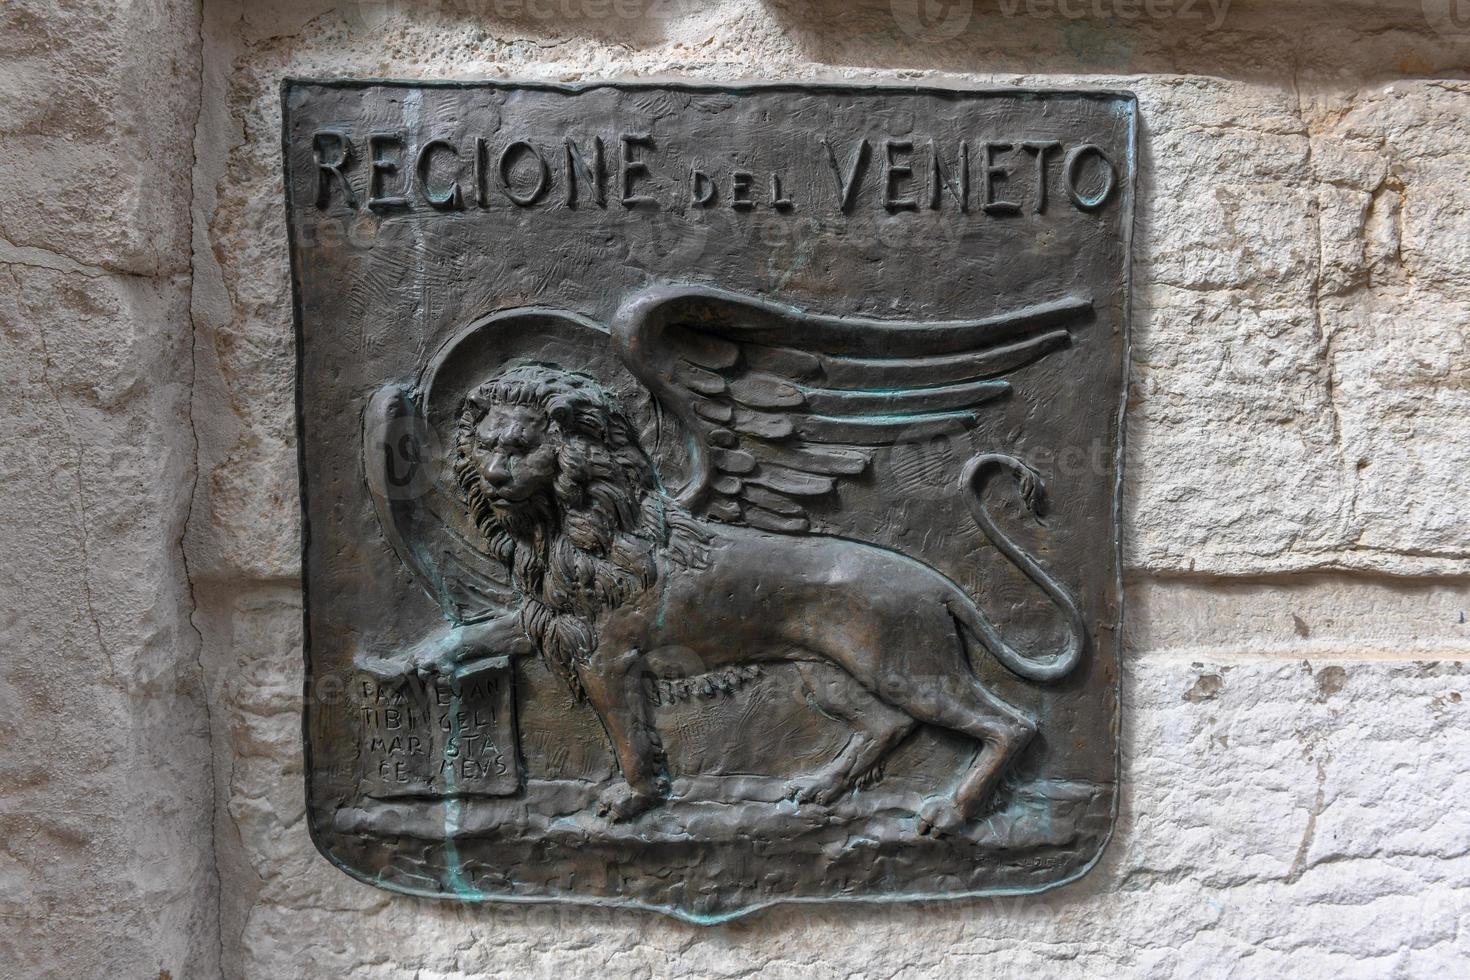 o leão de são marcos, representando o evangelista são marcos, retratado na forma de um leão alado segurando uma bíblia, é o símbolo da cidade de veneza, na itália. foto